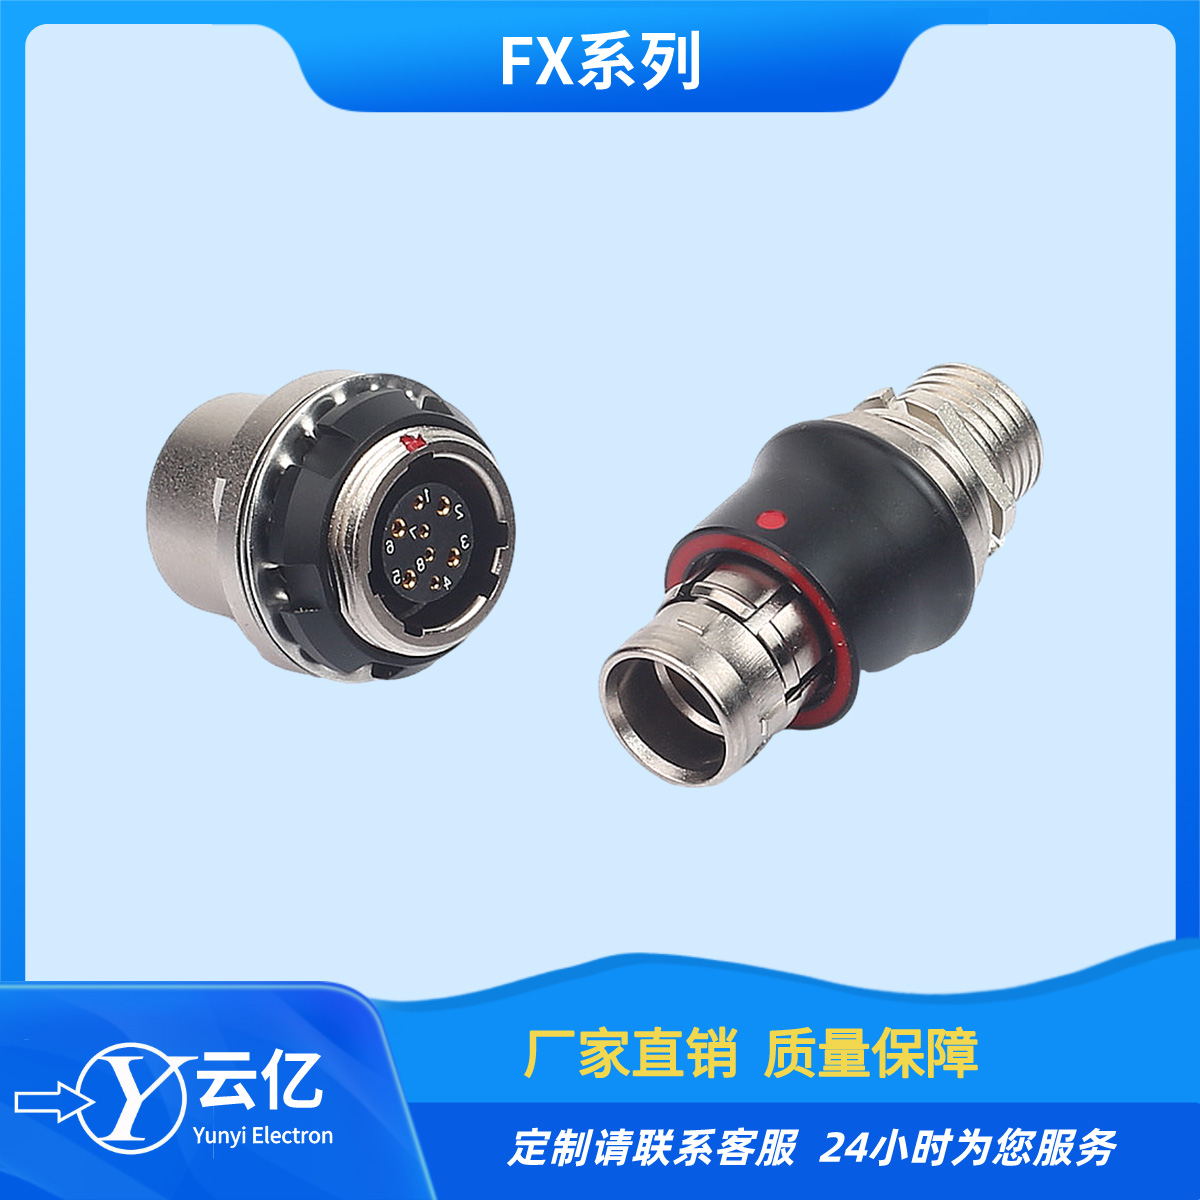 兼容各大厂家推拉自锁连接器FX1031T02C058JN-HS焊接HDMI线束插头 定制电缆生产